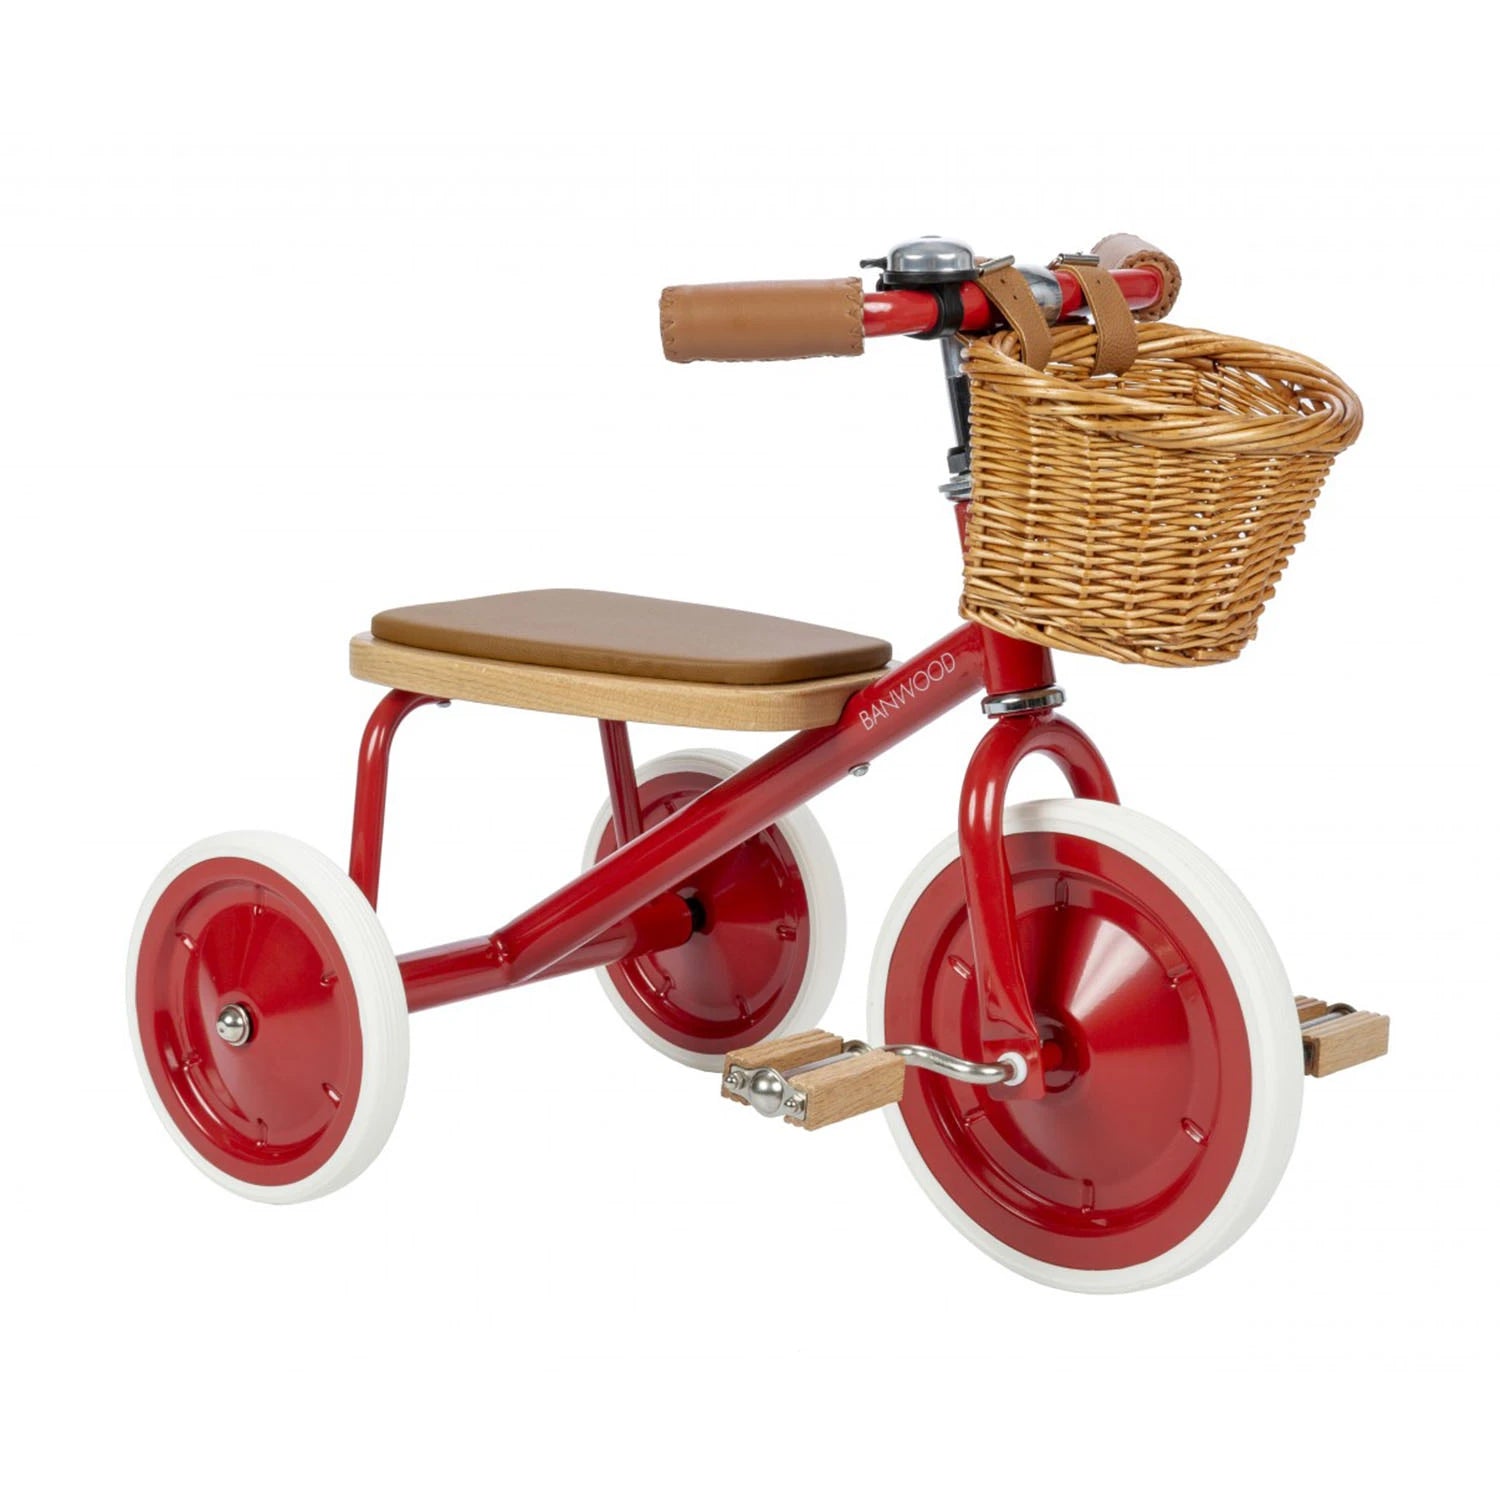 An image of Banwood Buy Banwood Trike Vintage Bike (Red) - SmallSmart UK